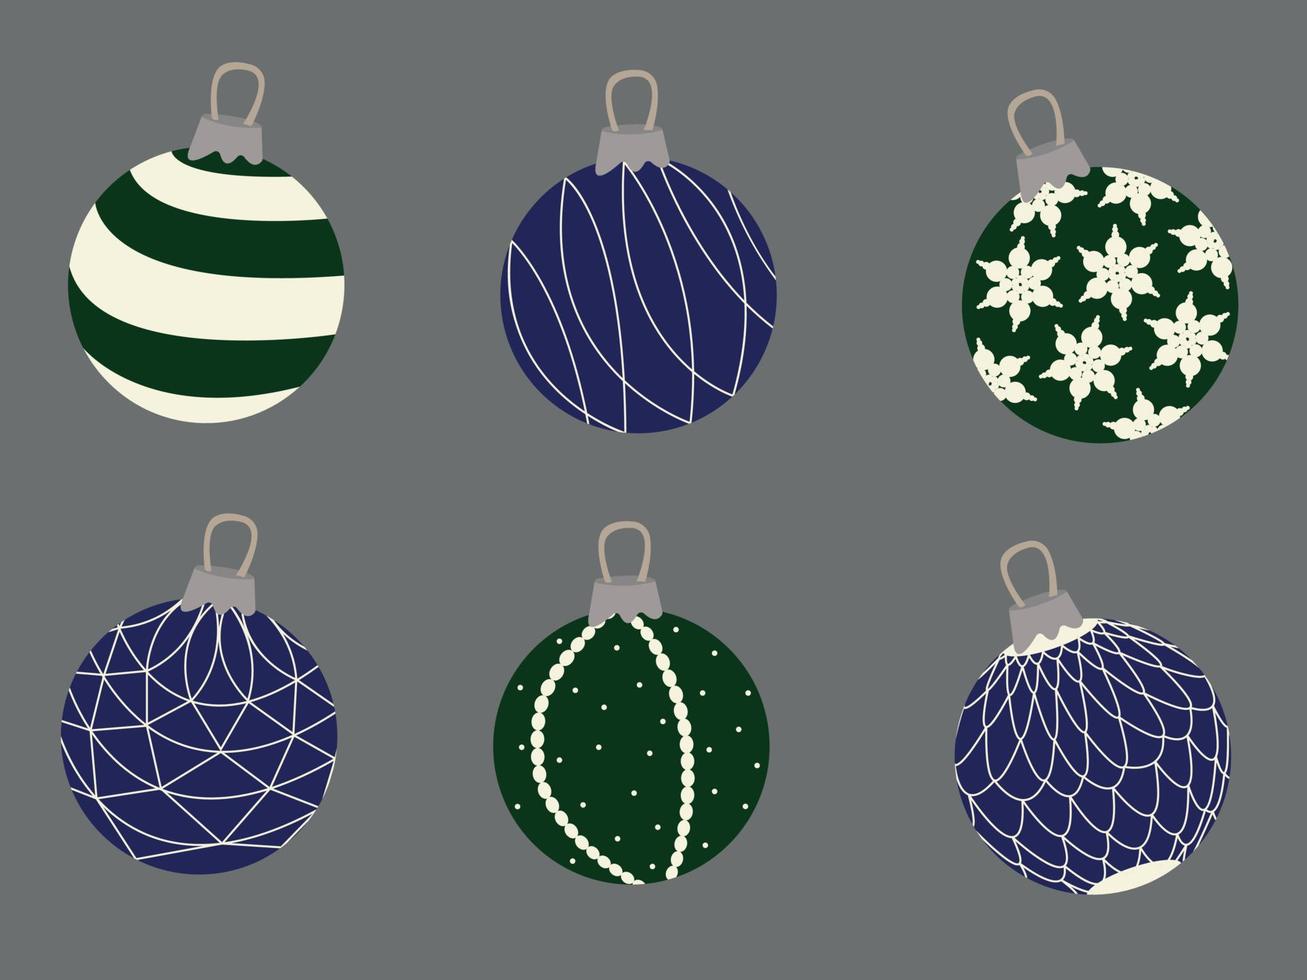 Set aus grünen und blauen Weihnachtskugeln mit Mustern vektor